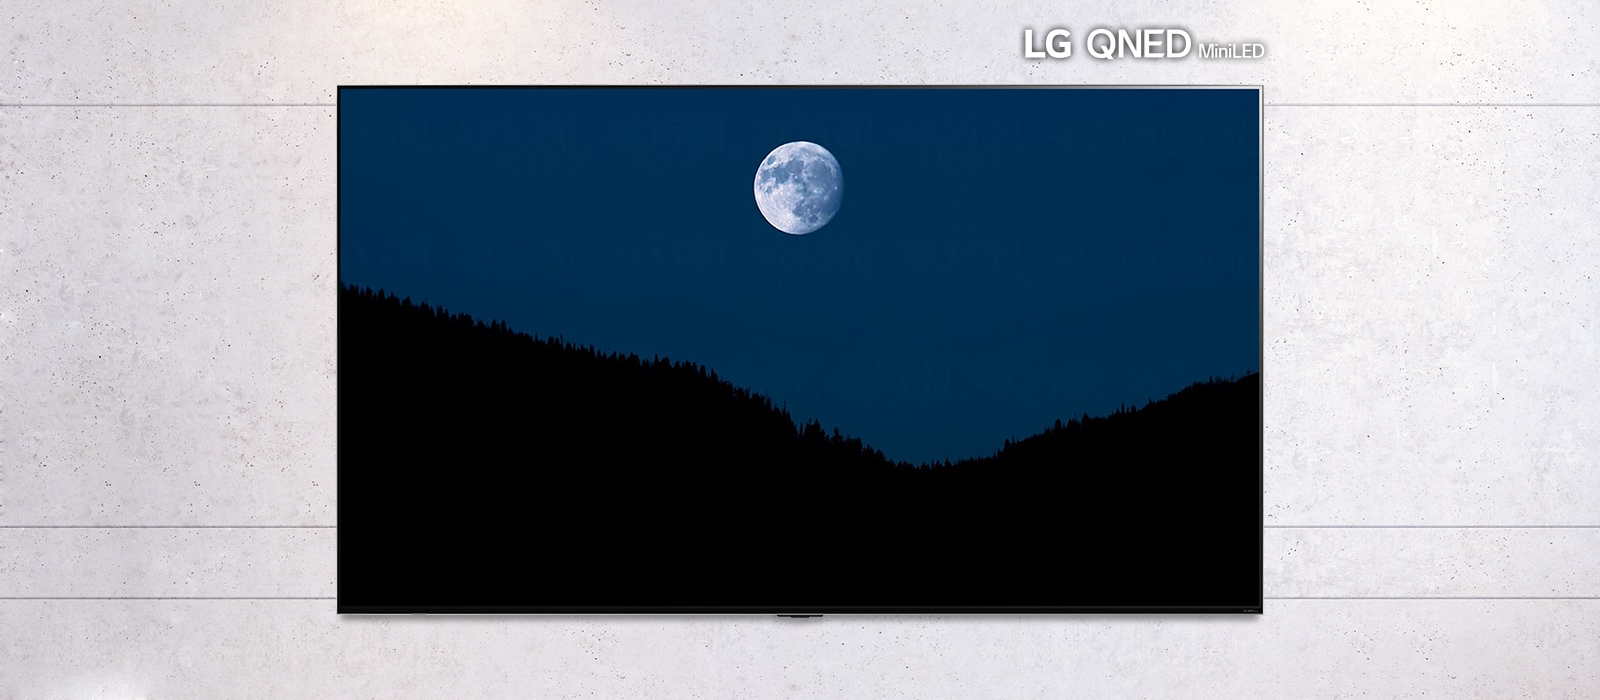 Image déroulante d’un téléviseur fixé au mur montrant une scène sombre d’une lune par-dessus des montagnes. La scène alterne entre un téléviseur de taille normale et grand écran de téléviseur LG QNED MiniLED.